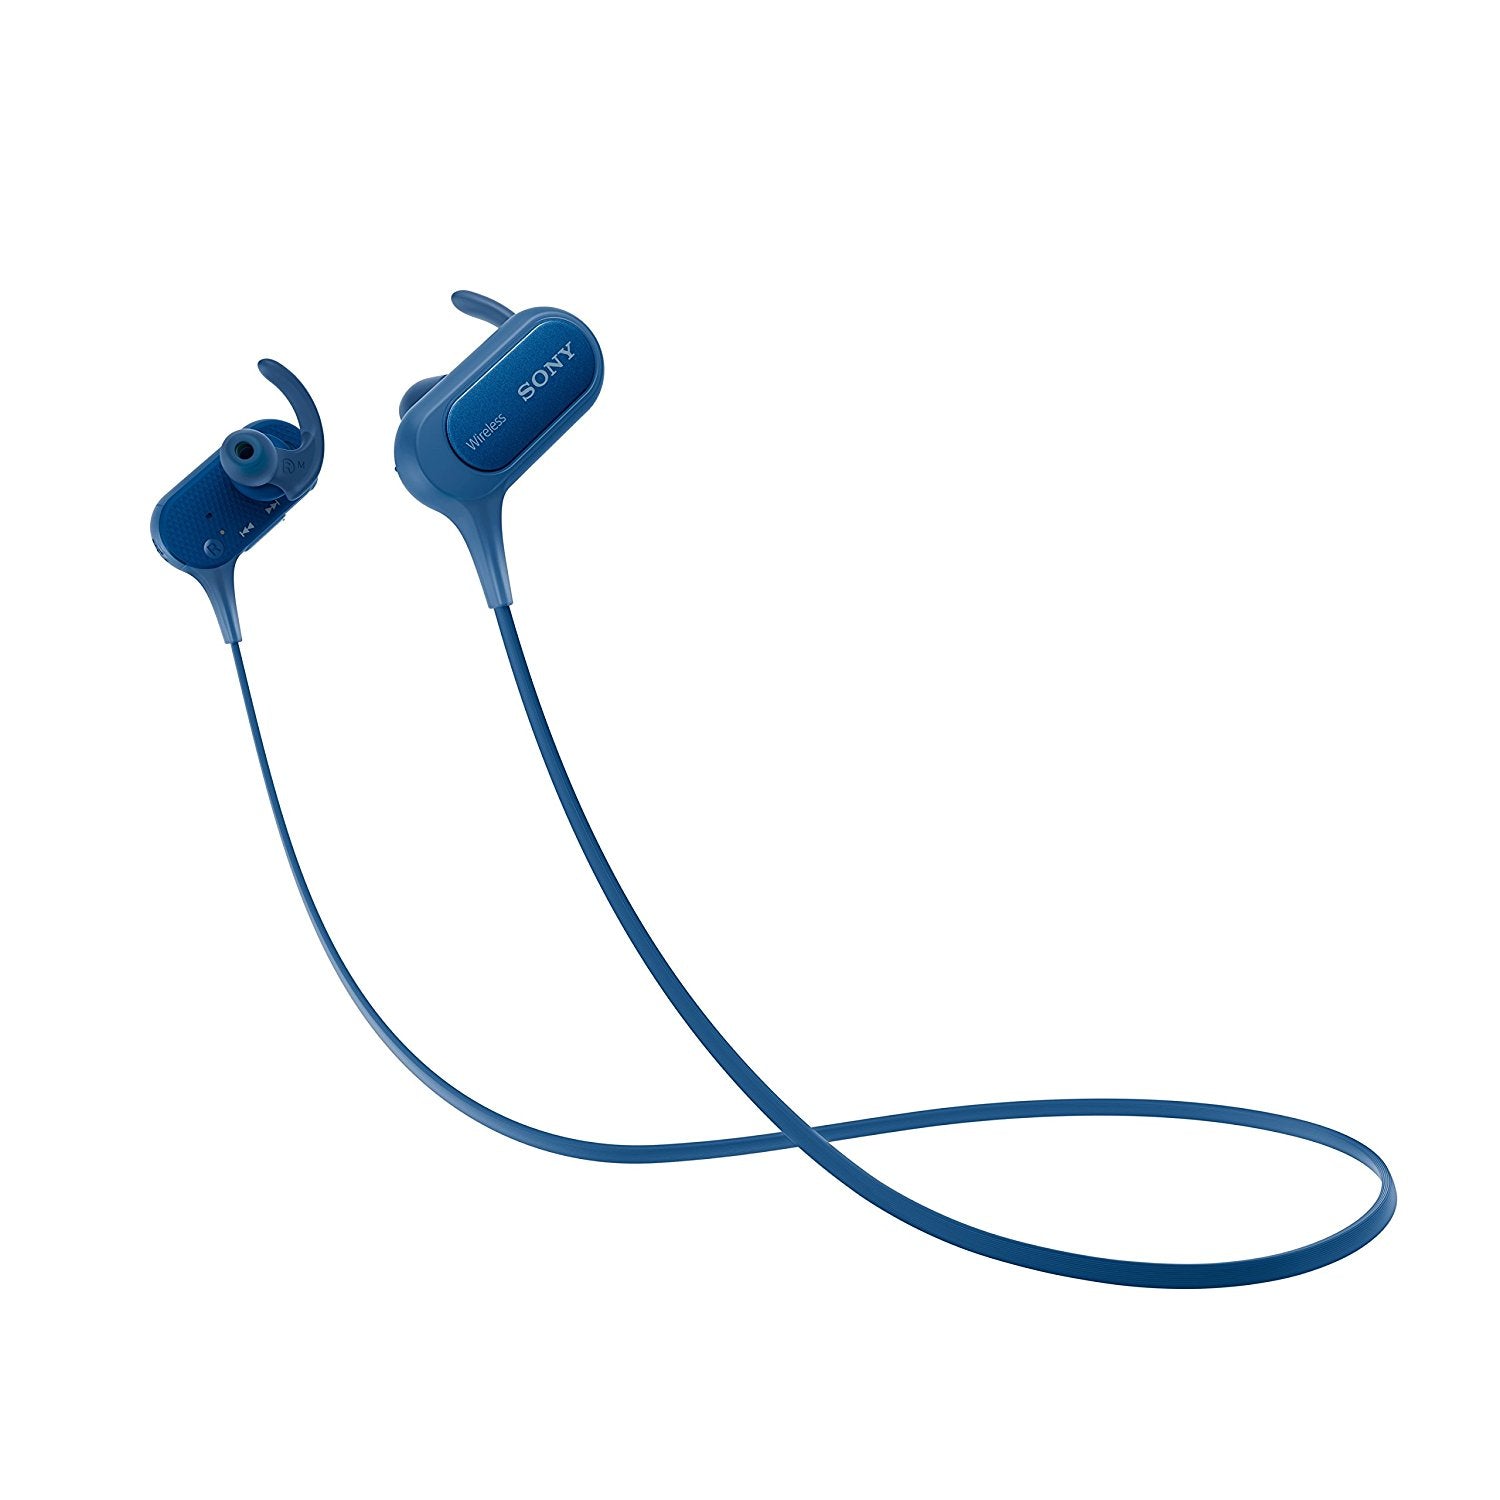 Sony Sony MDR-XB50BS - Sports - earphones with mic - in-ear - wireless - Bluetooth - NFC - blue